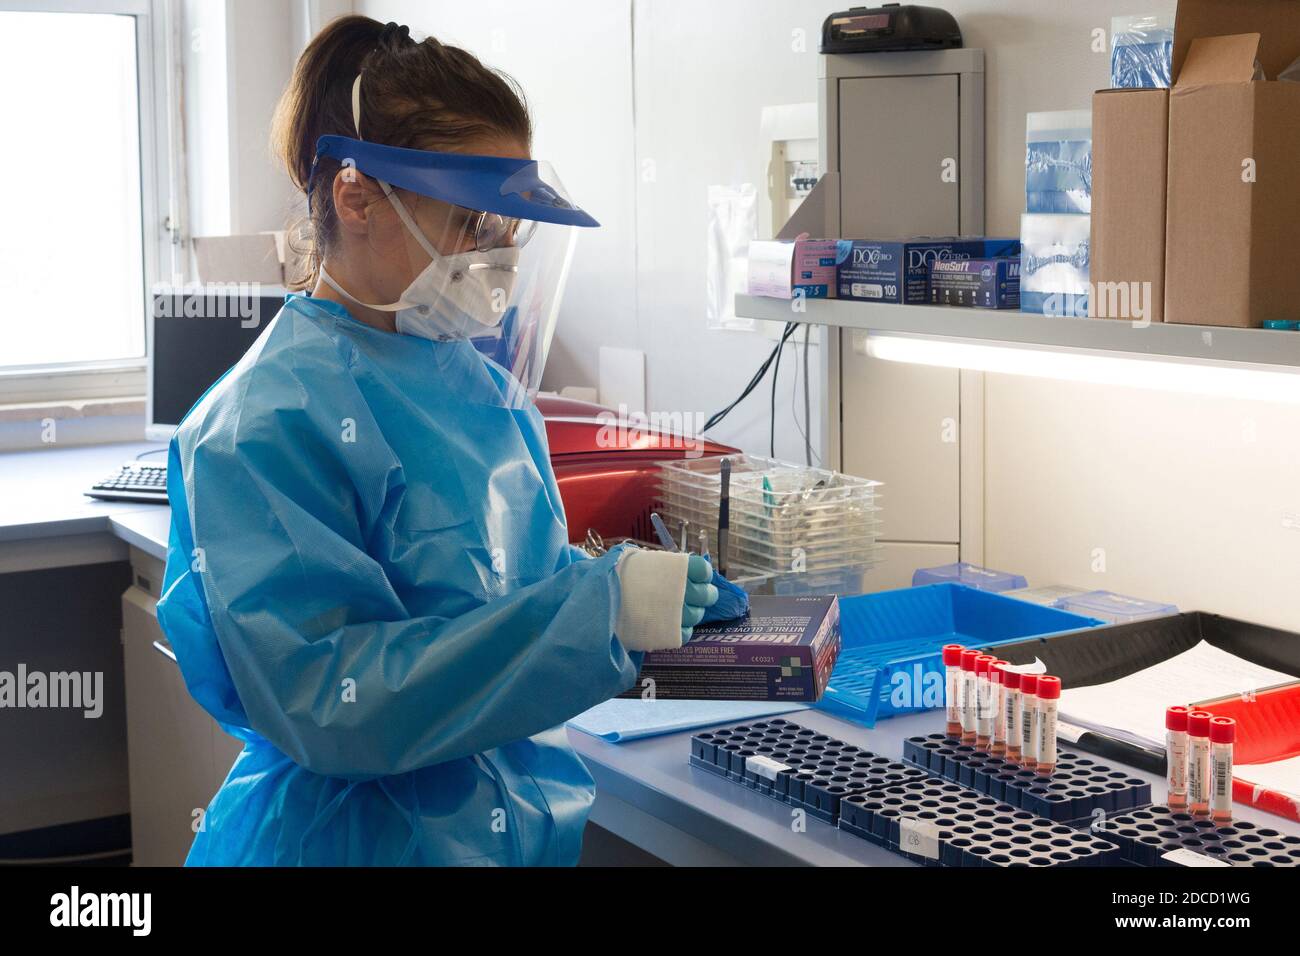 Campobasso, Molise, Italie : infirmière du laboratoire d'analyse de biologie moléculaire de l'hôpital Cardarelli, vêtue de combinaisons et de masques de protection Banque D'Images